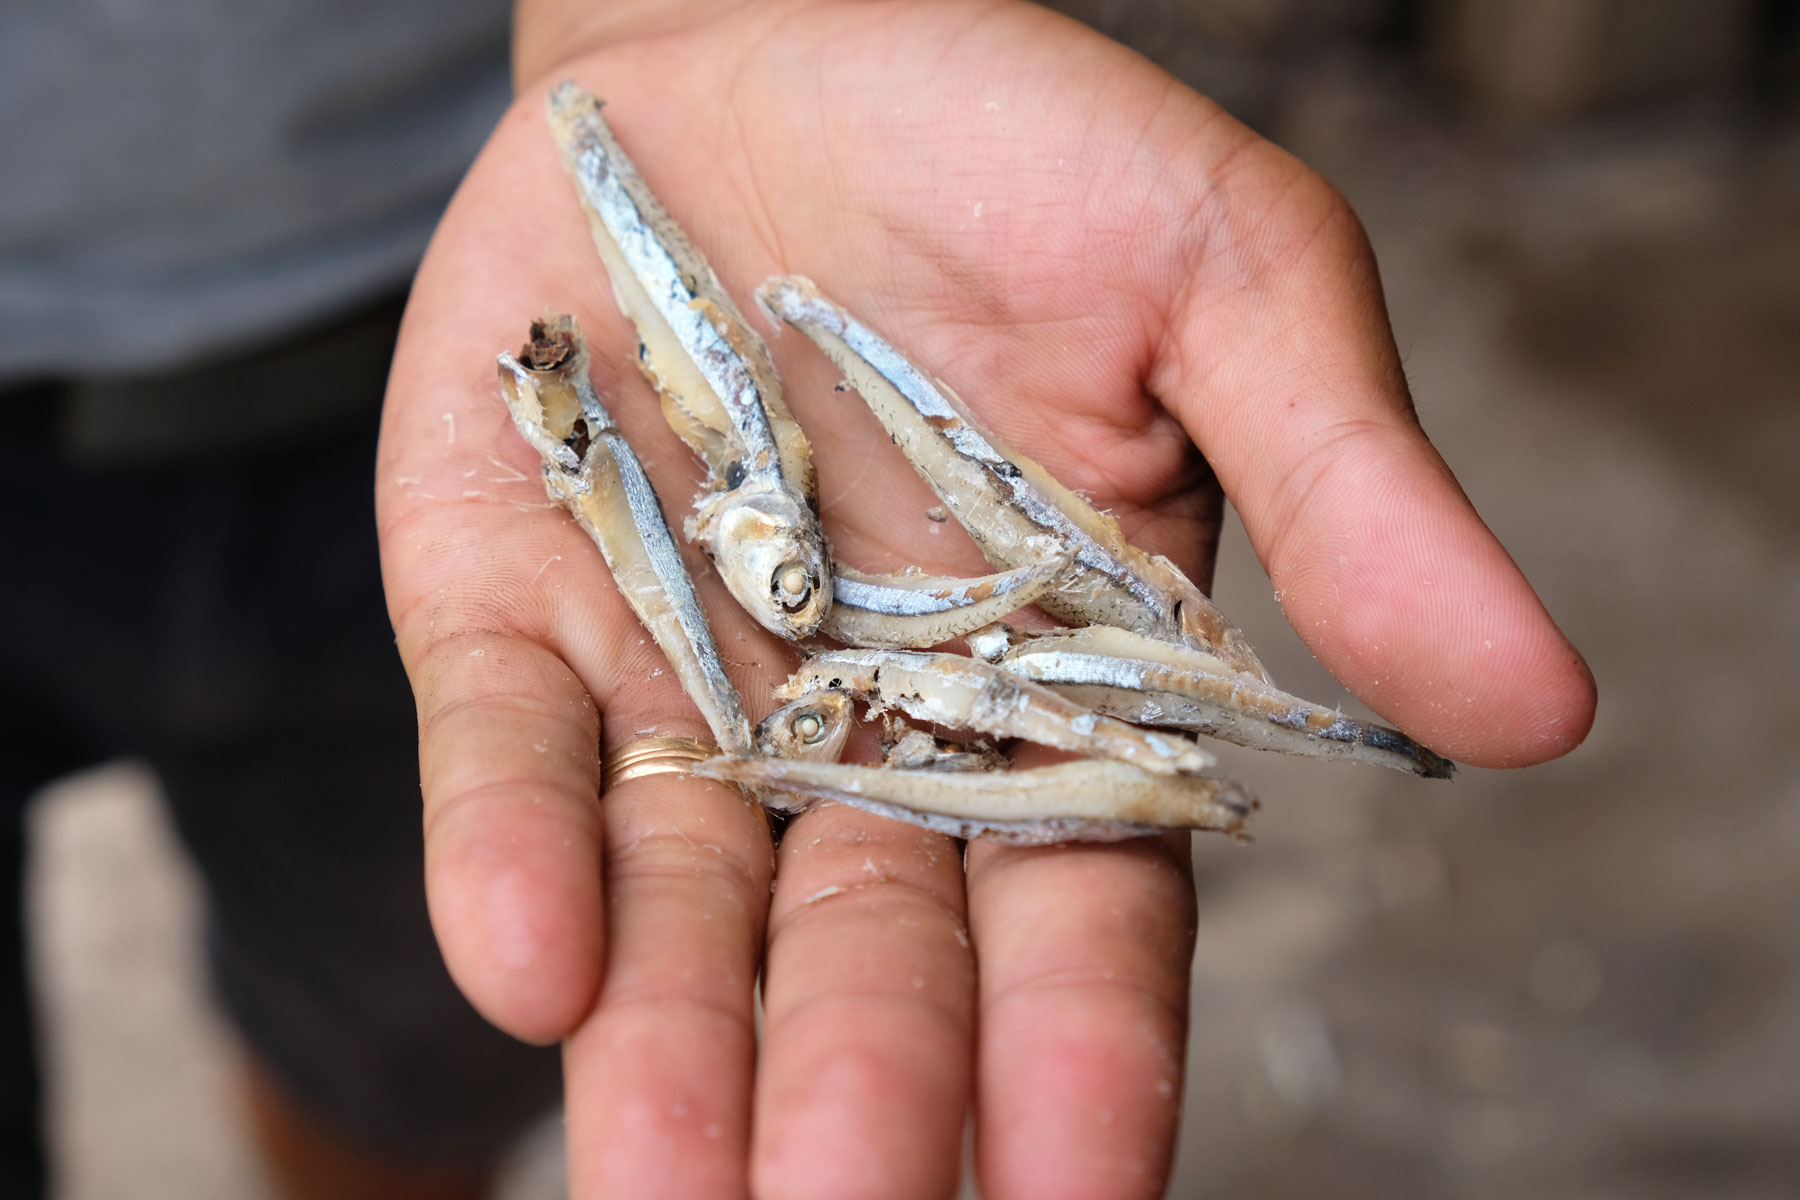 Kleine getrocknete Fische liegen auf einer Handfläche.